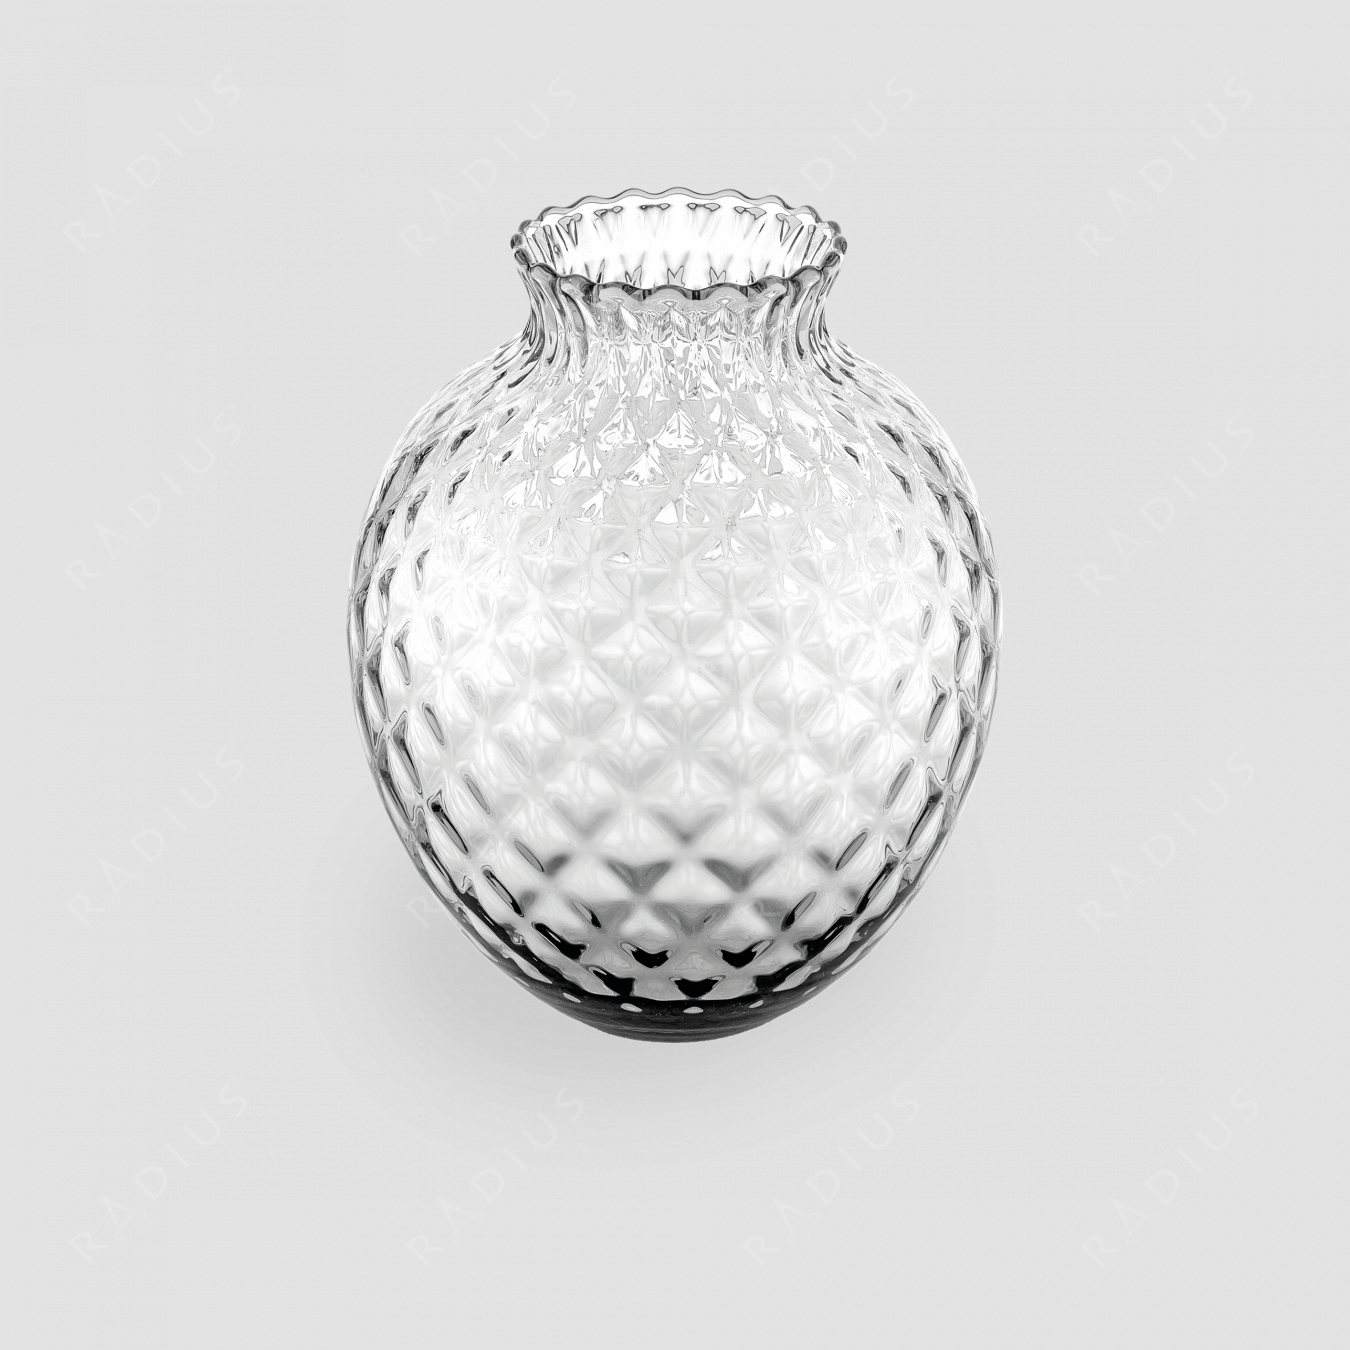 Стеклянная ваза для цветов высота 28,5 см, прозрачная Maggio, стекло, ручная работа, серия Infiore, IVV, Италия